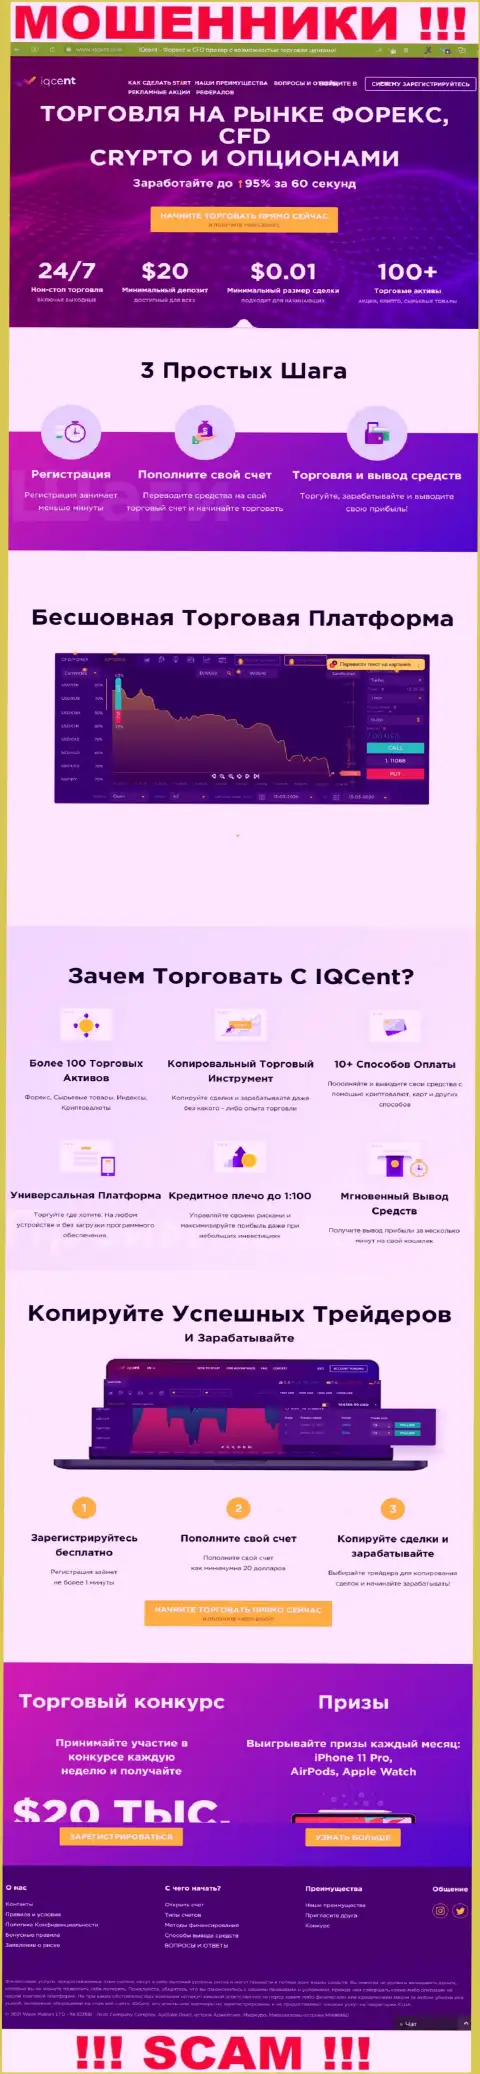 Официальный интернет-сервис мошенников АйКуЦент, забитый информацией для лохов